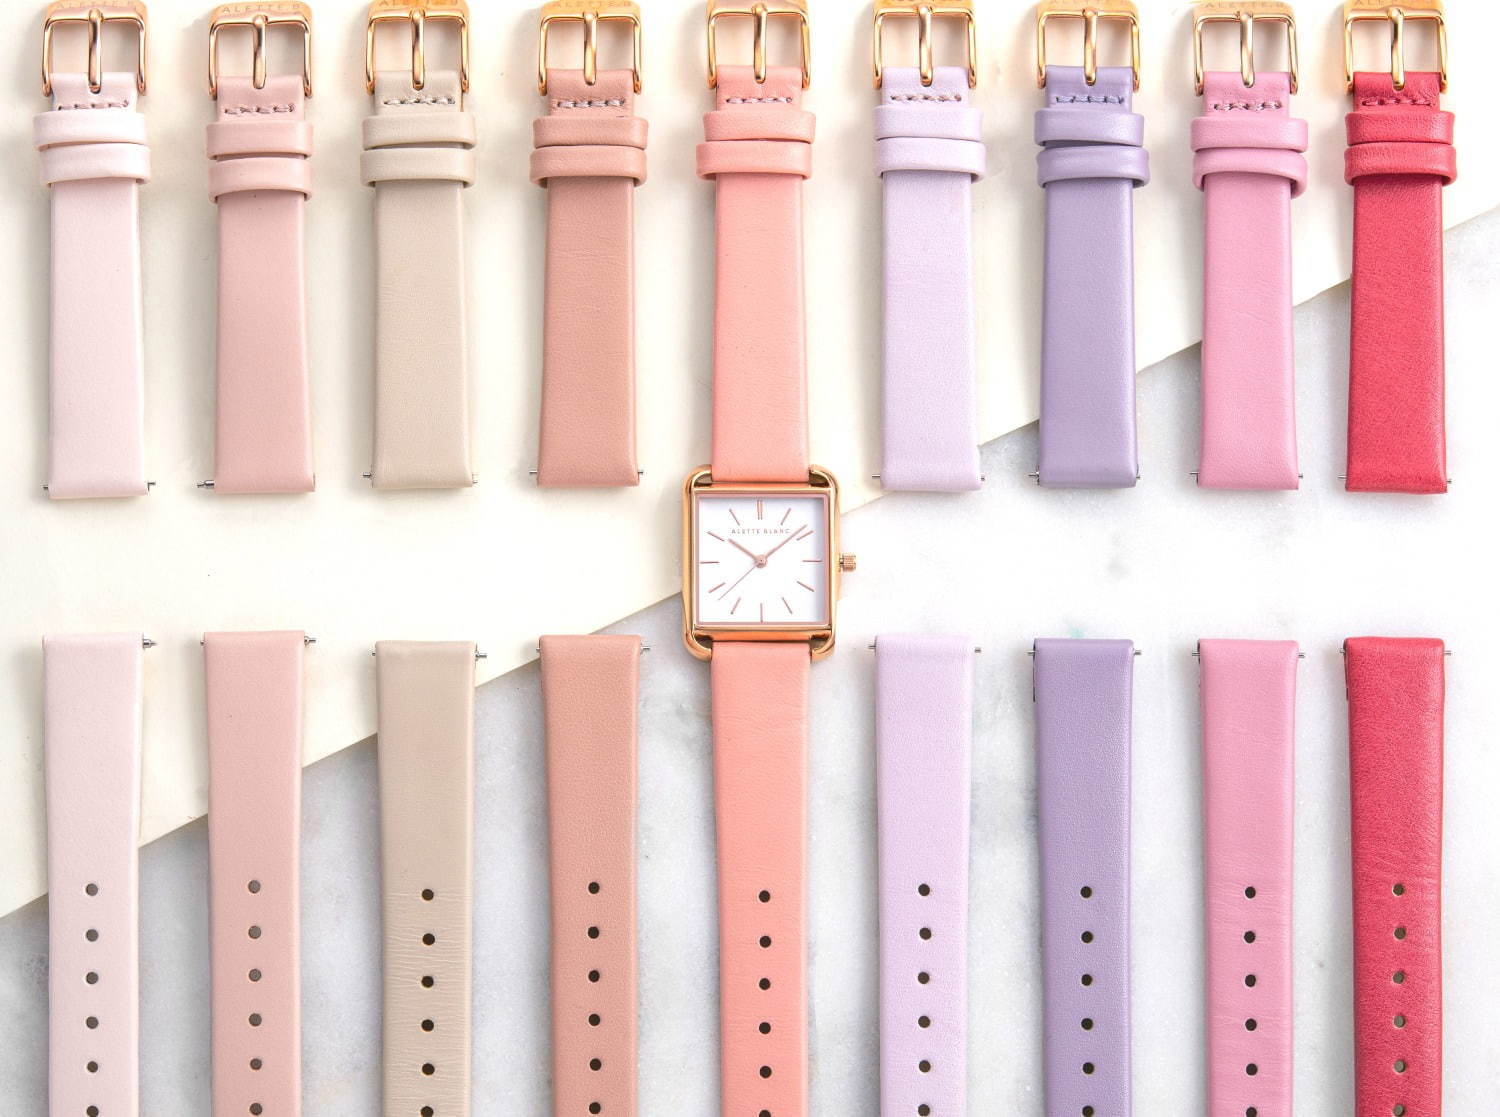 アレットブラン 33色 から選べる腕時計 パレットスクエアコレクション ワンタッチで付け替え可能 ファッションプレス